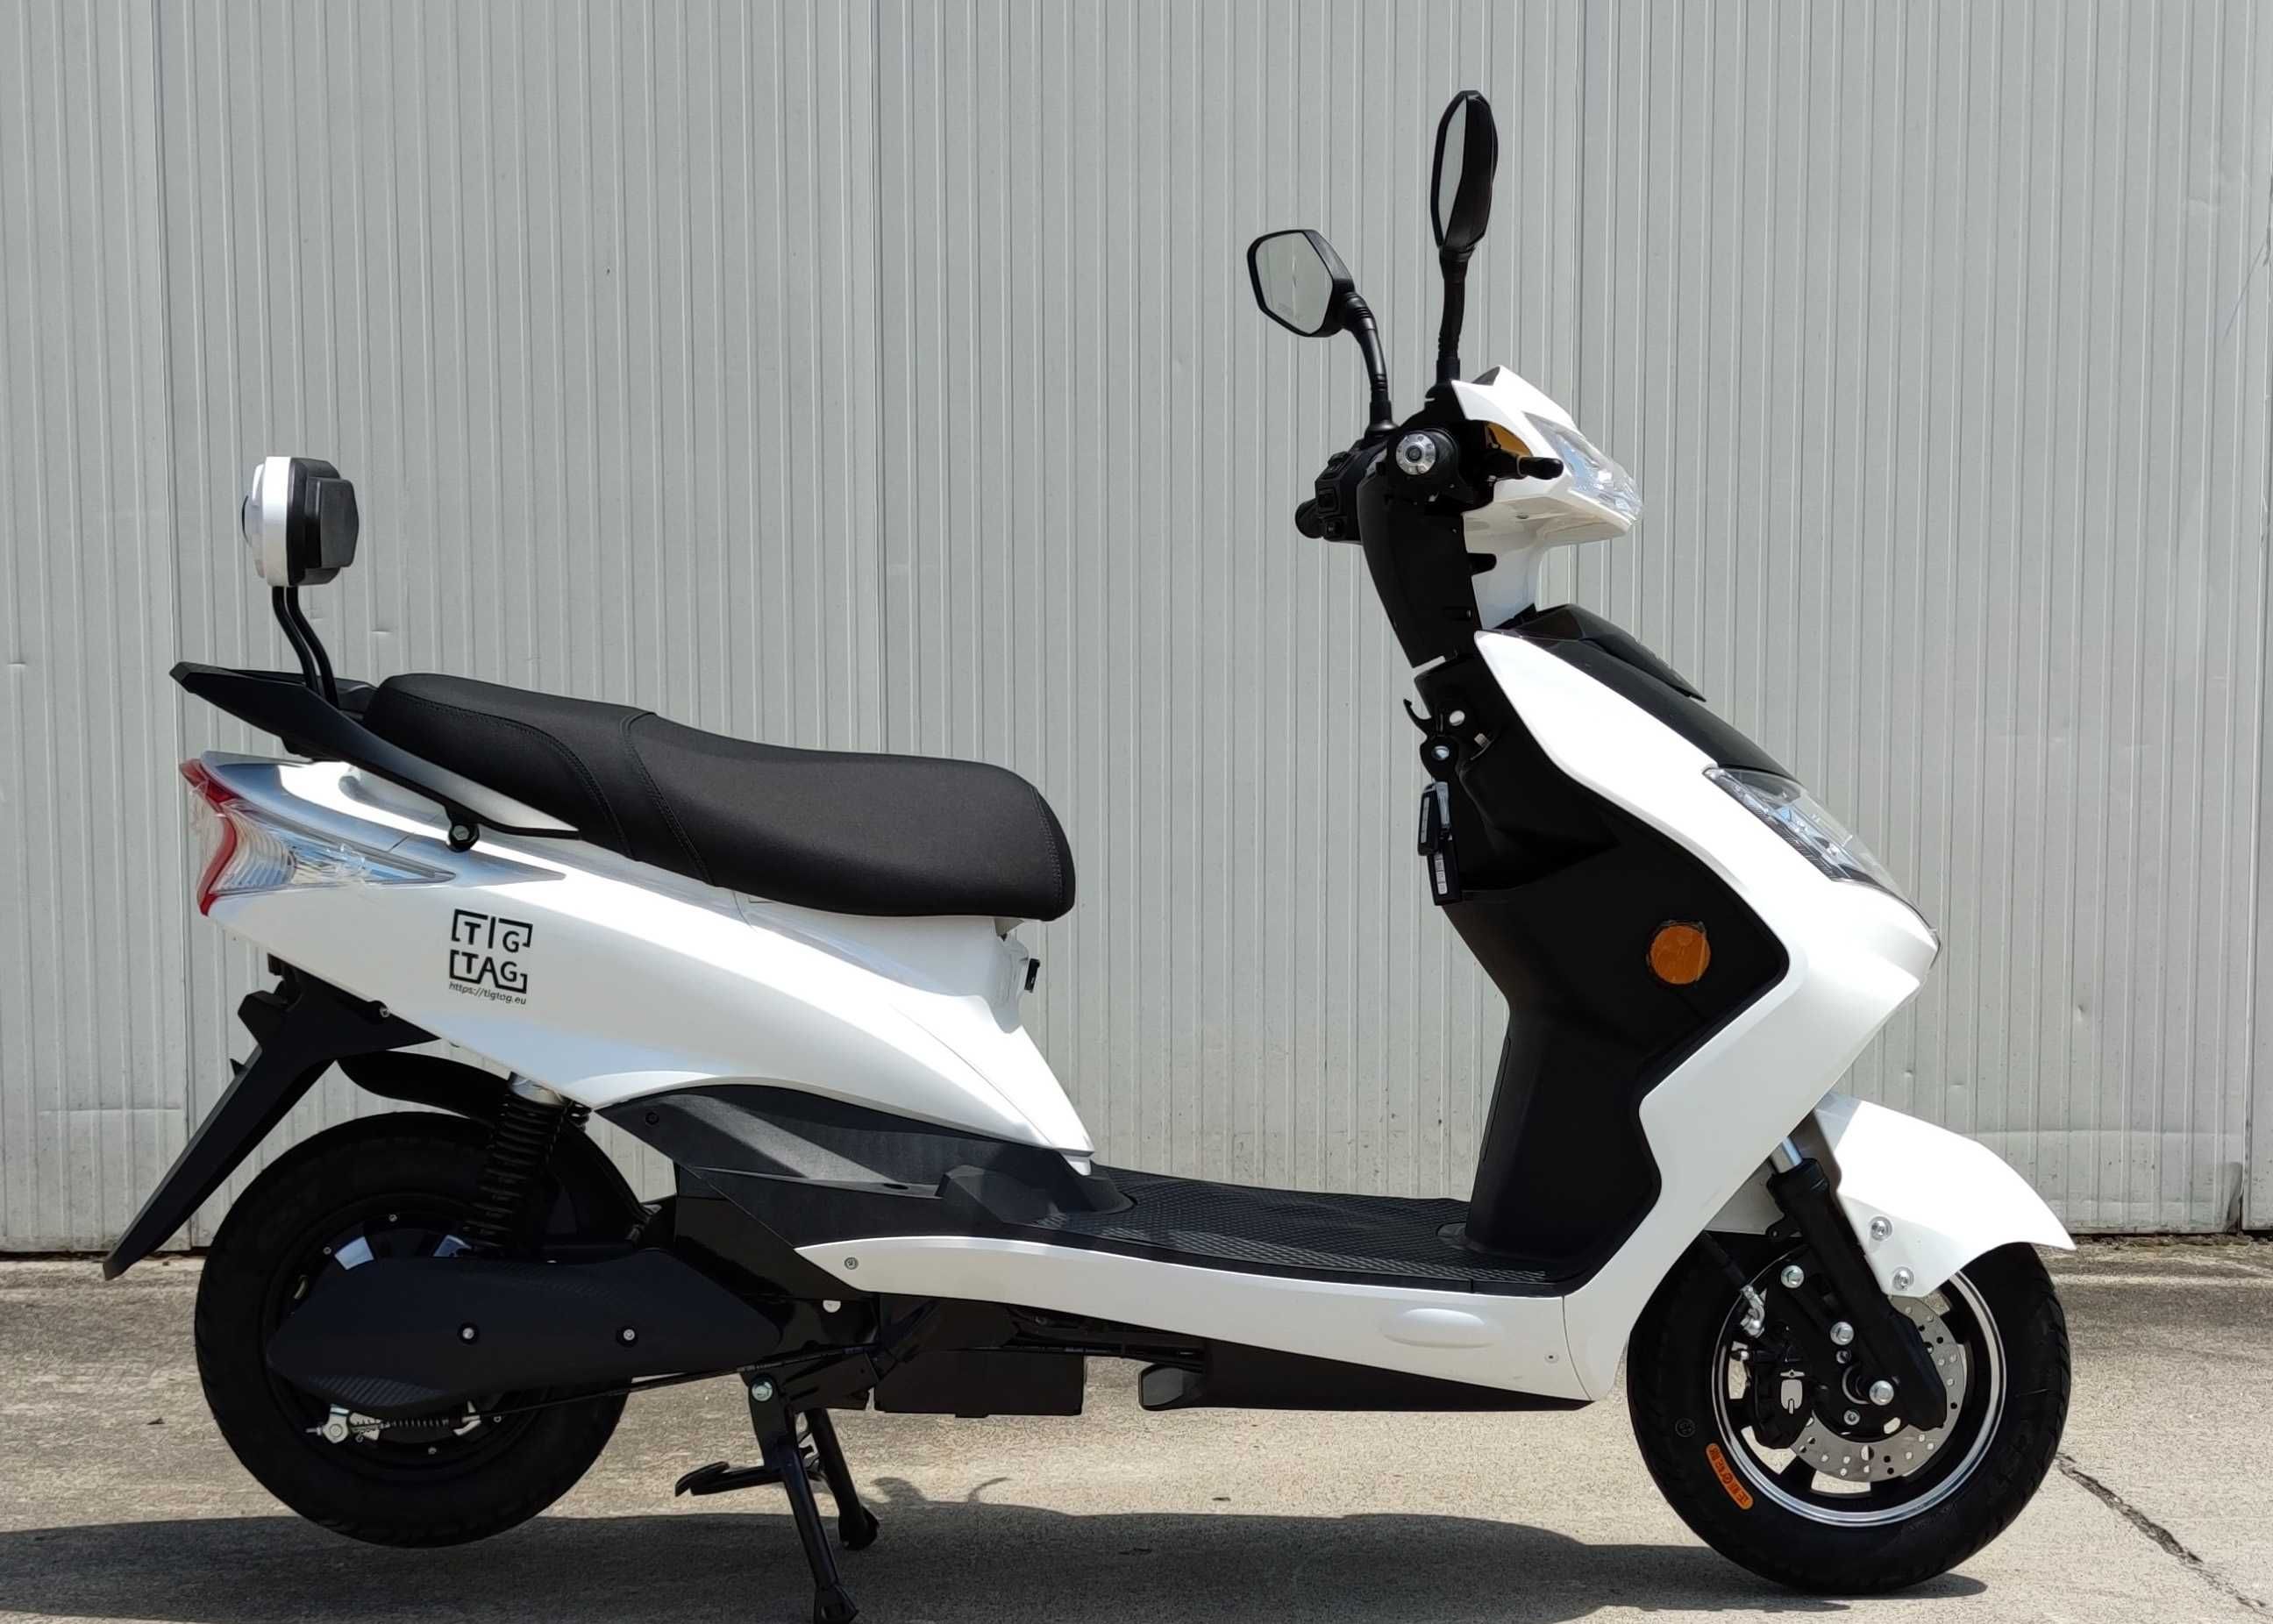 Електрически скутер My Force модел ЕМ006 бял цвят с регистрация